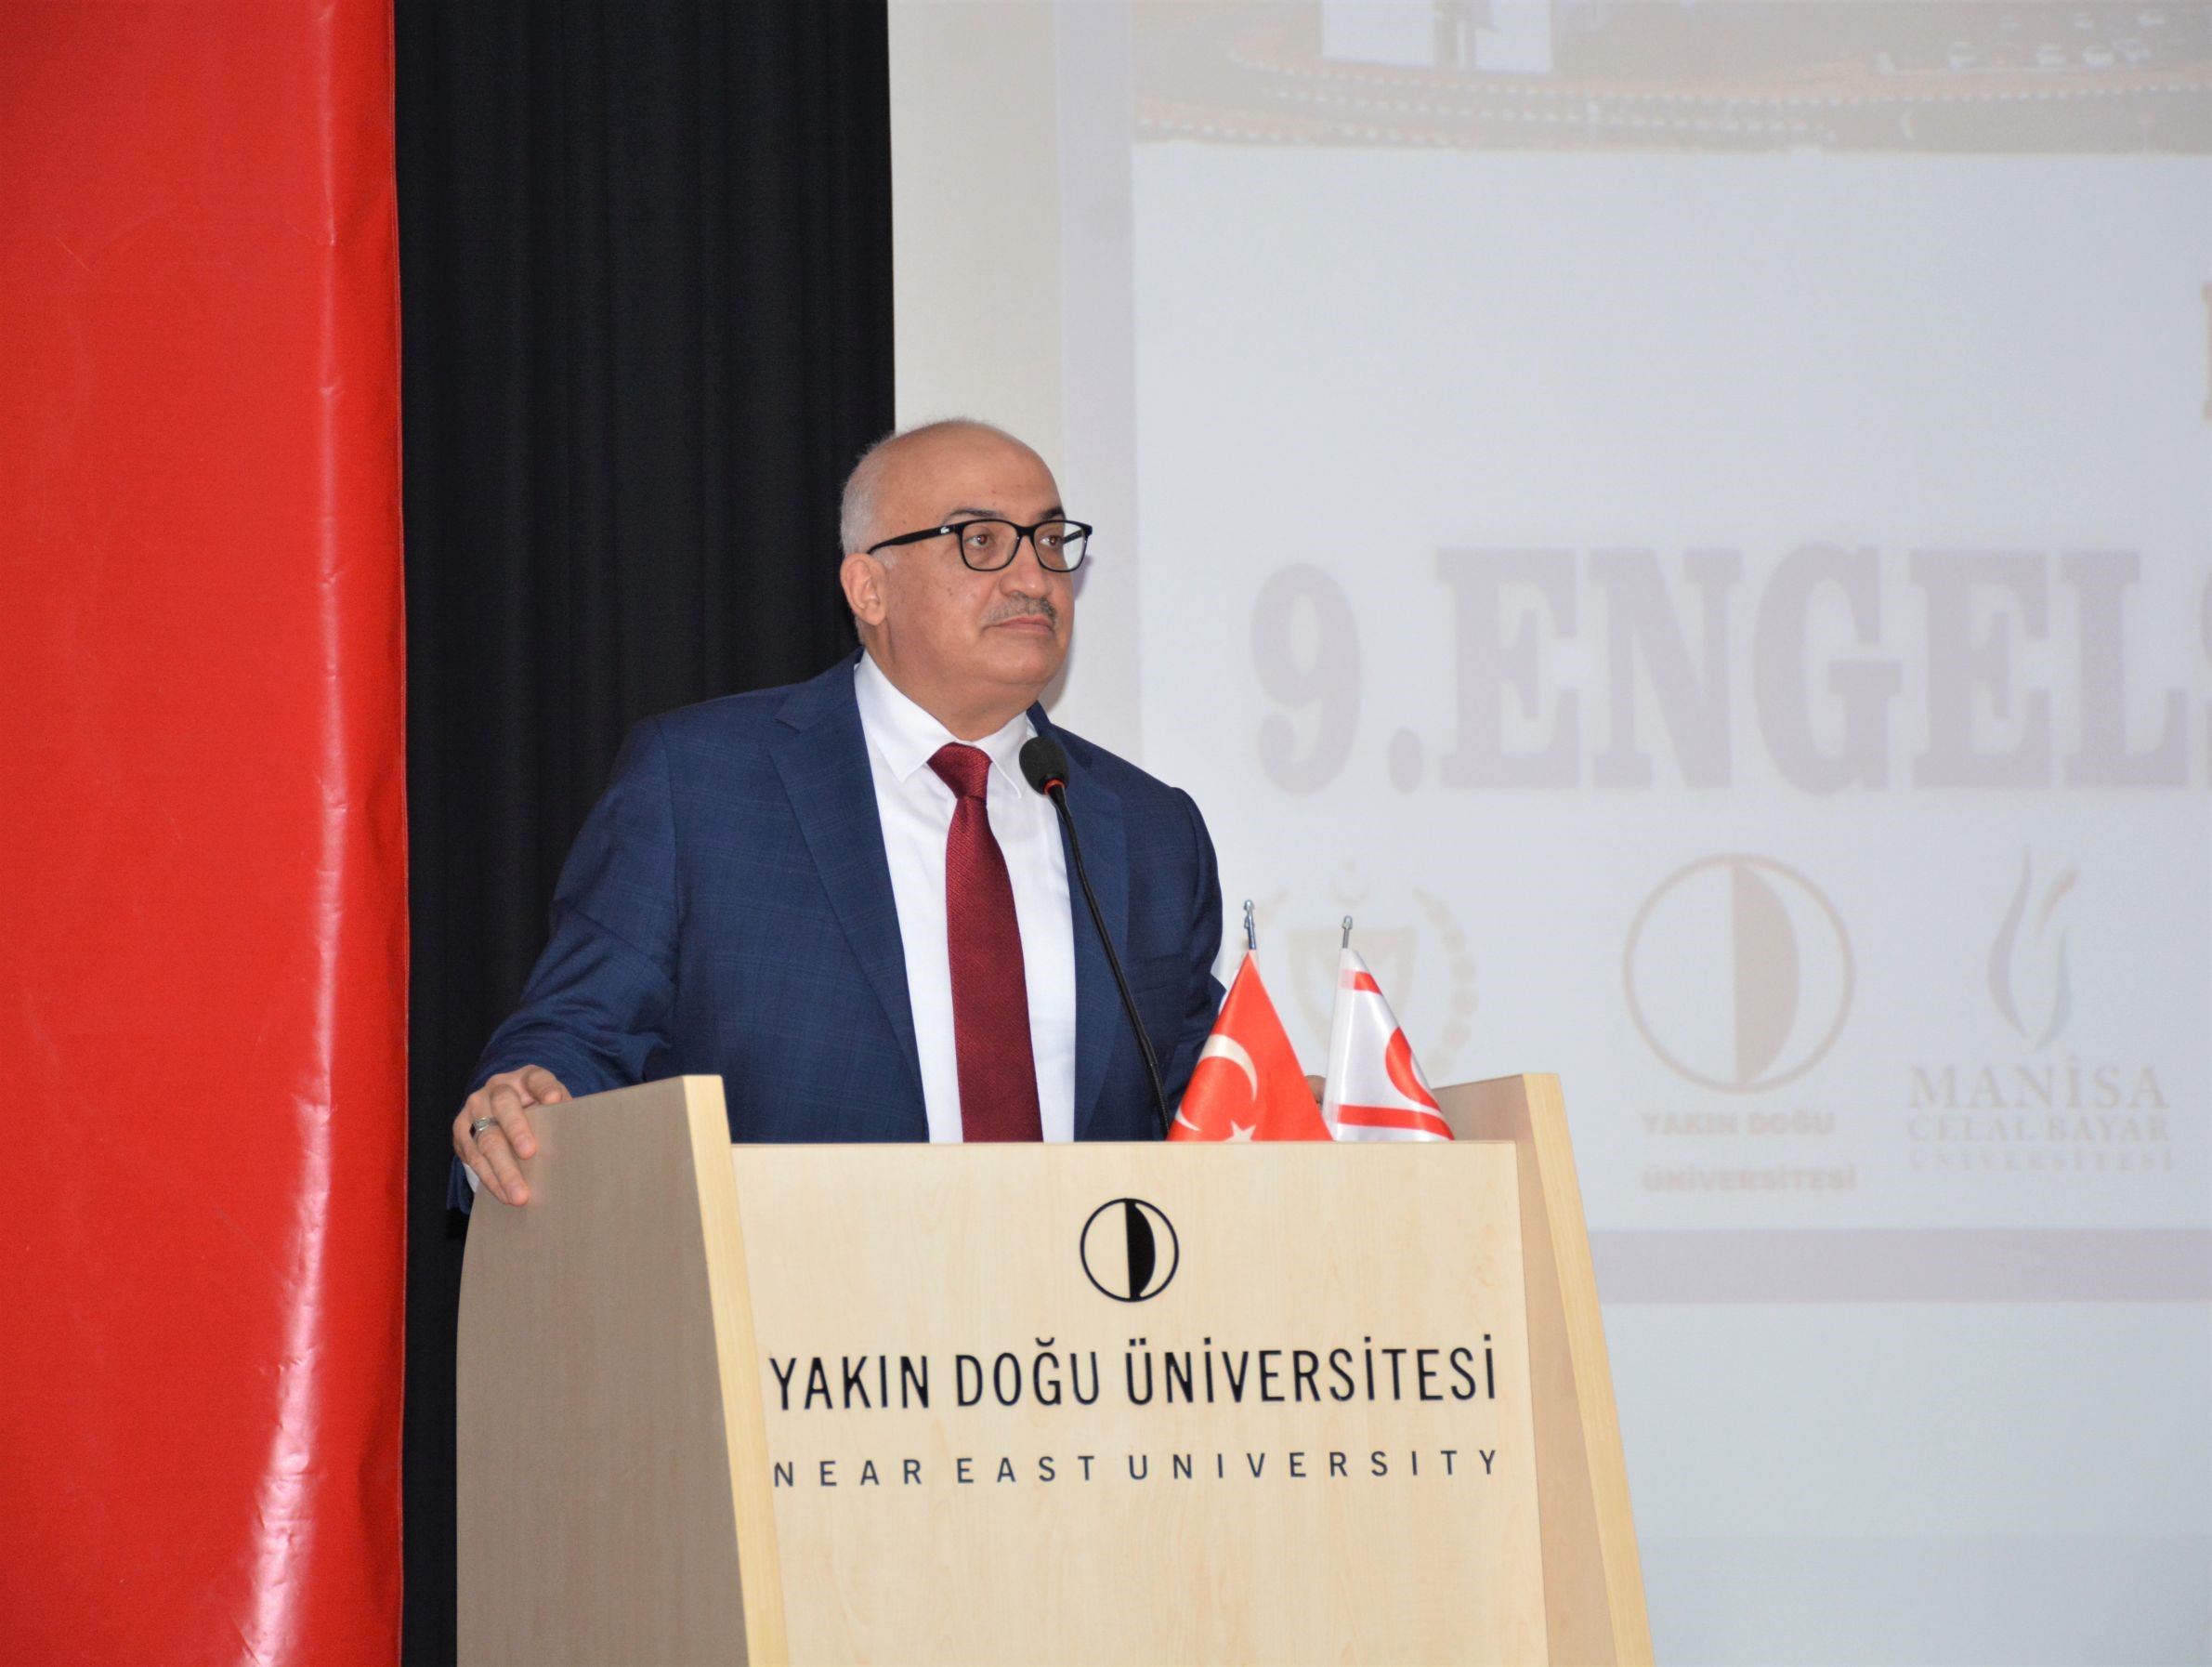 Manisa Celal Bayar Üniversitesi Rektörü Prof. Dr. Ahmet ATAÇ'ın açılış konuşması